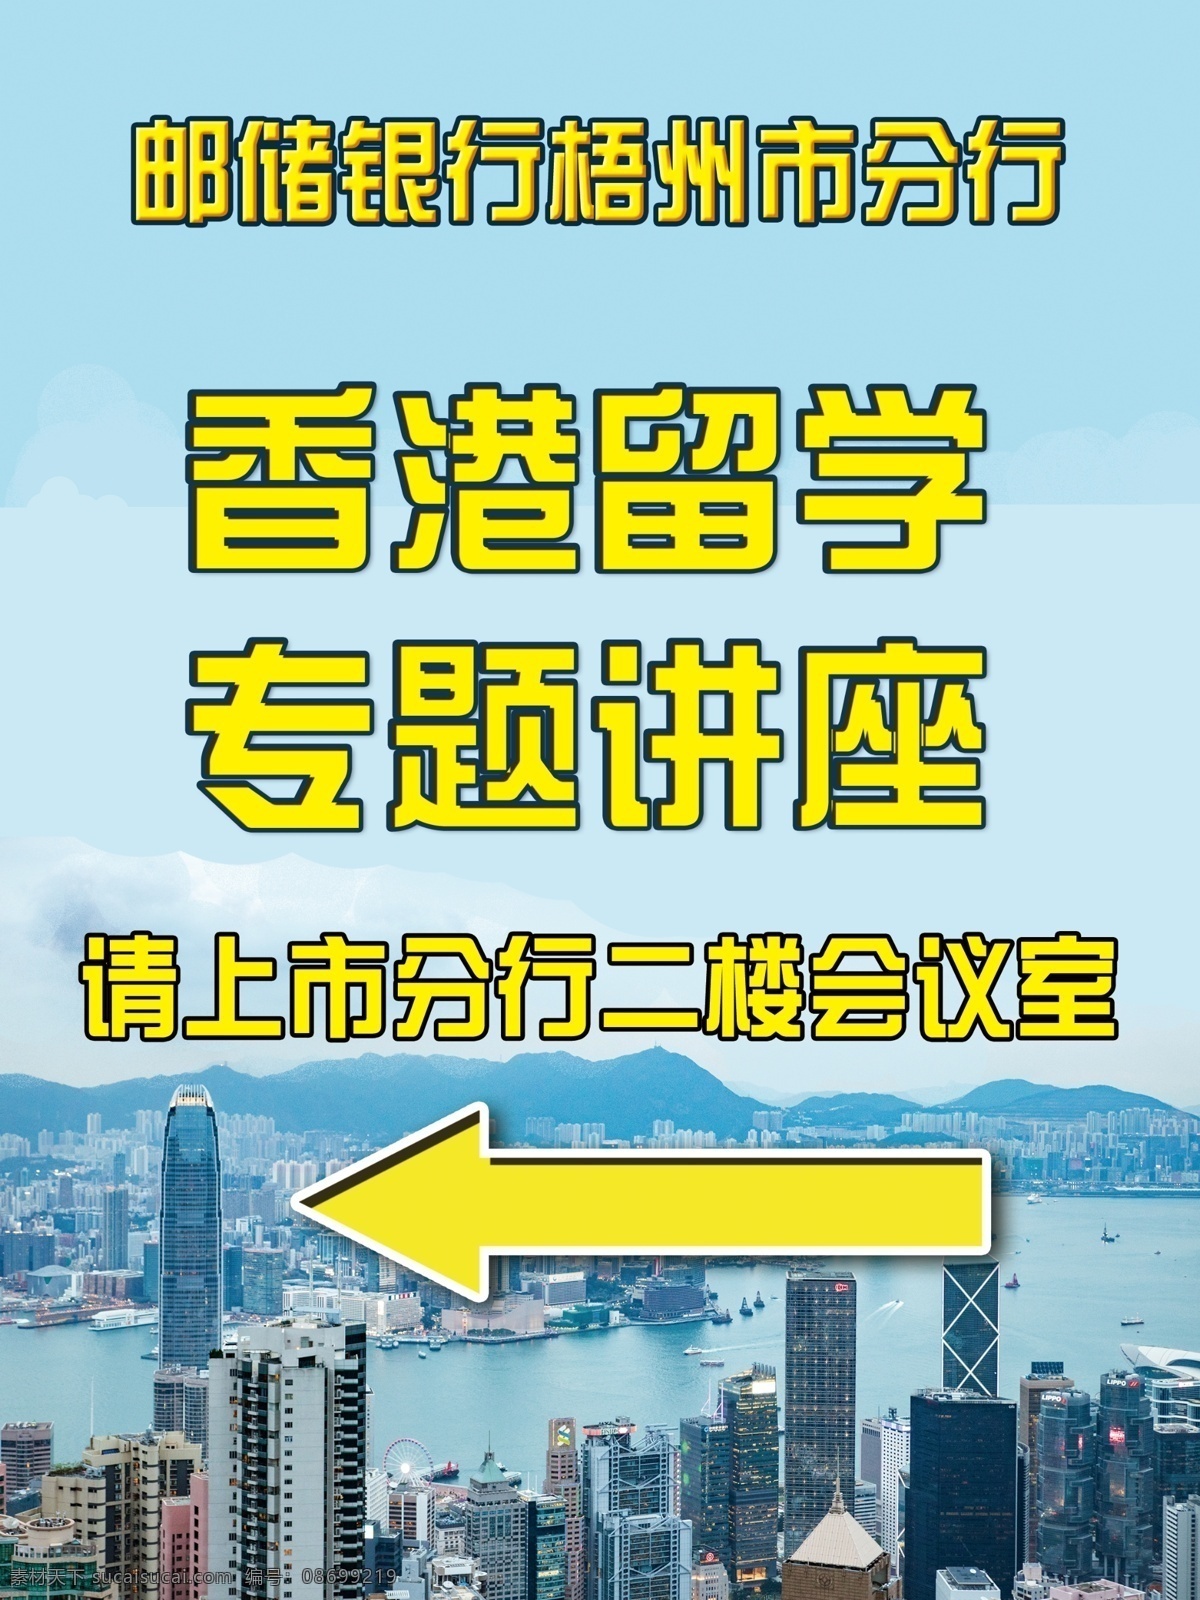 香港风景图片 香港风景 风景 ps 底板 展板模板